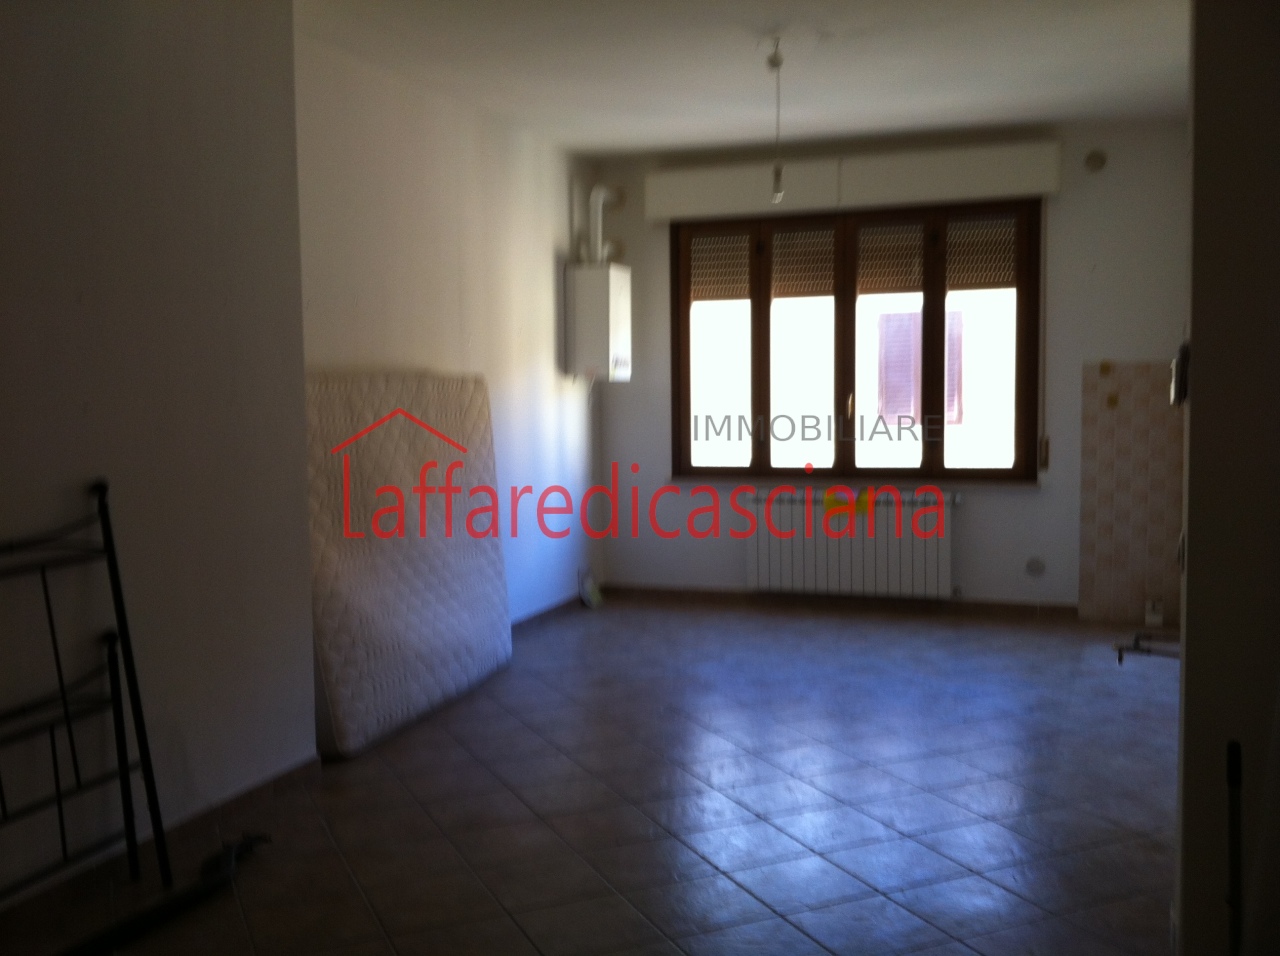 Appartamento in vendita a Casciana Terme Lari, 3 locali, prezzo € 90.000 | PortaleAgenzieImmobiliari.it